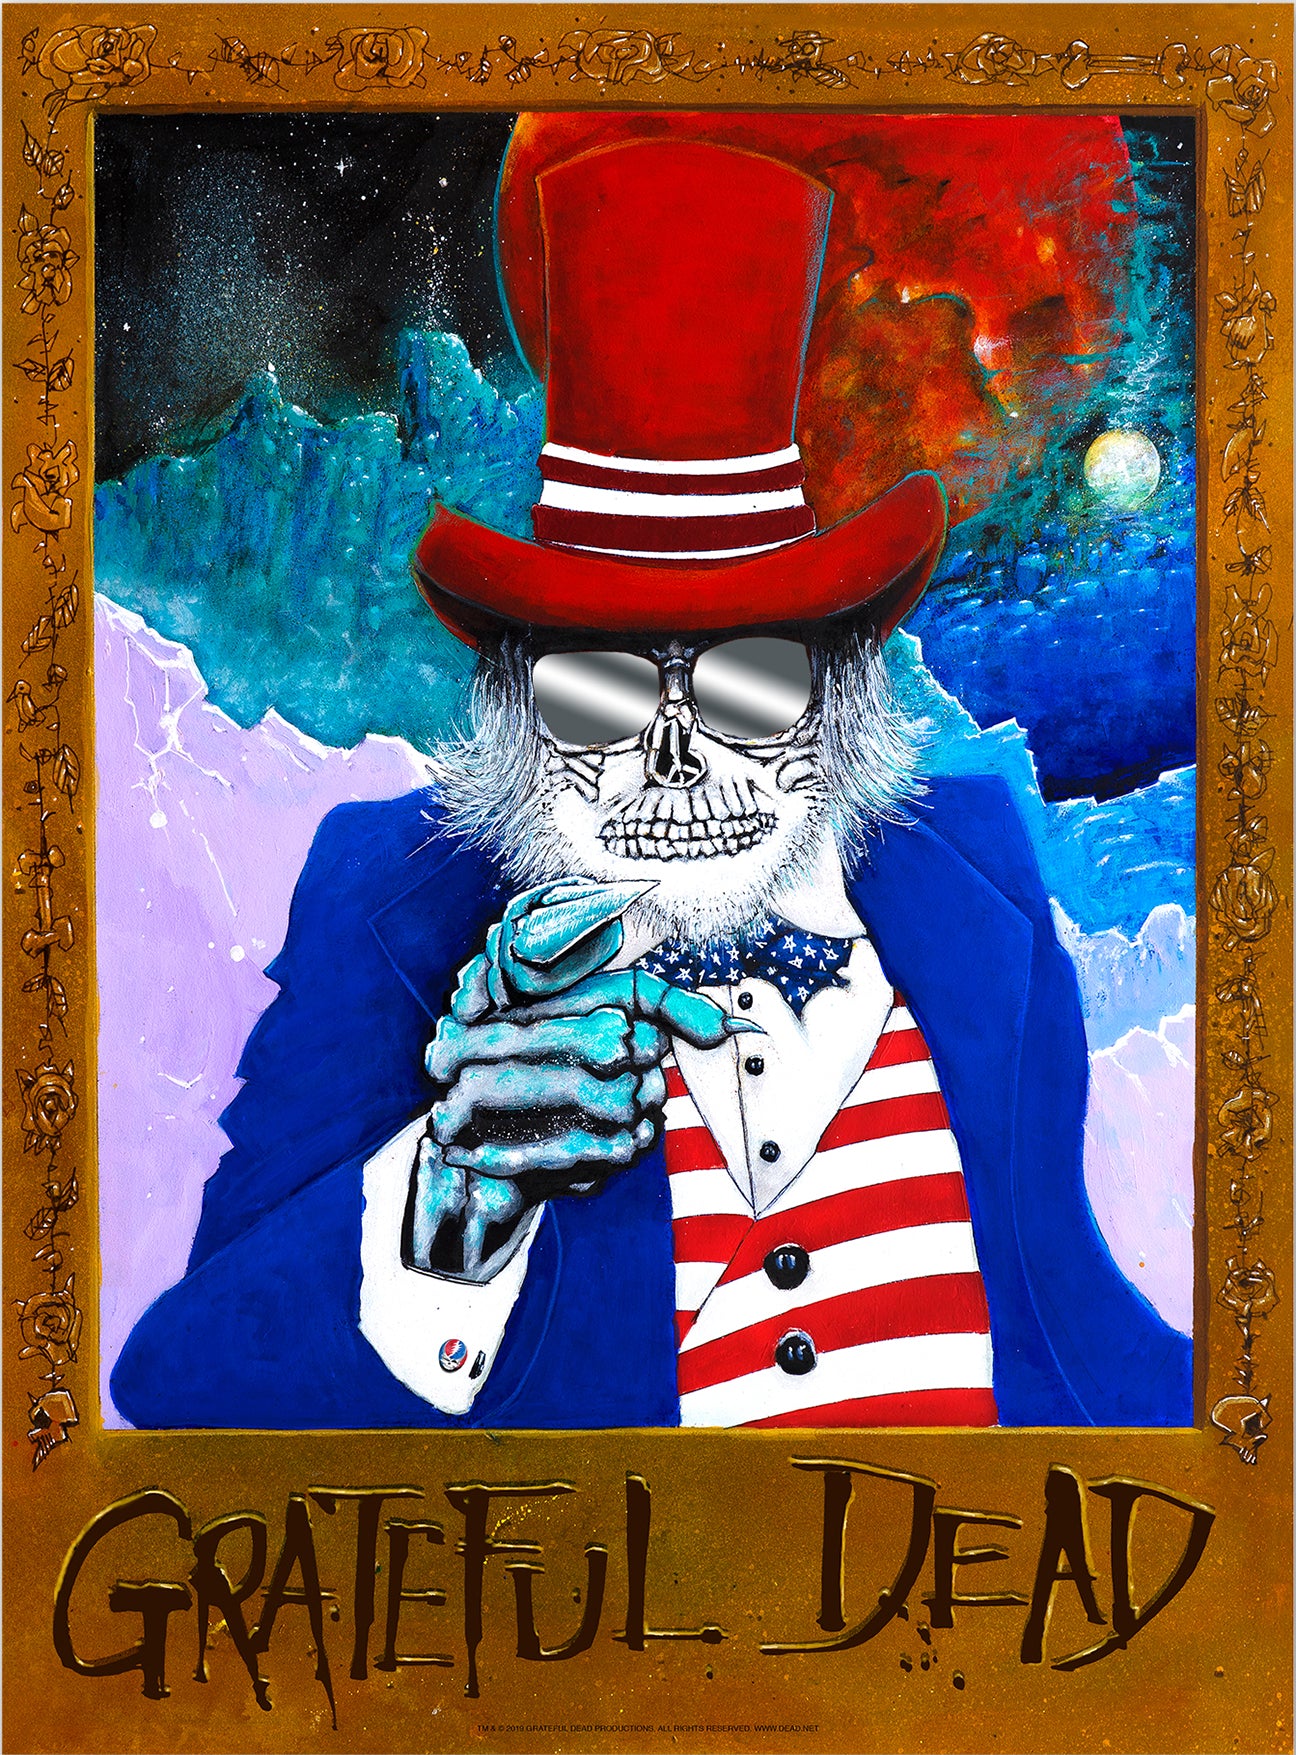 Joey Feldman "Grateful Dead: Uncle Sam Wants You" Hot Foil Stamp Variant